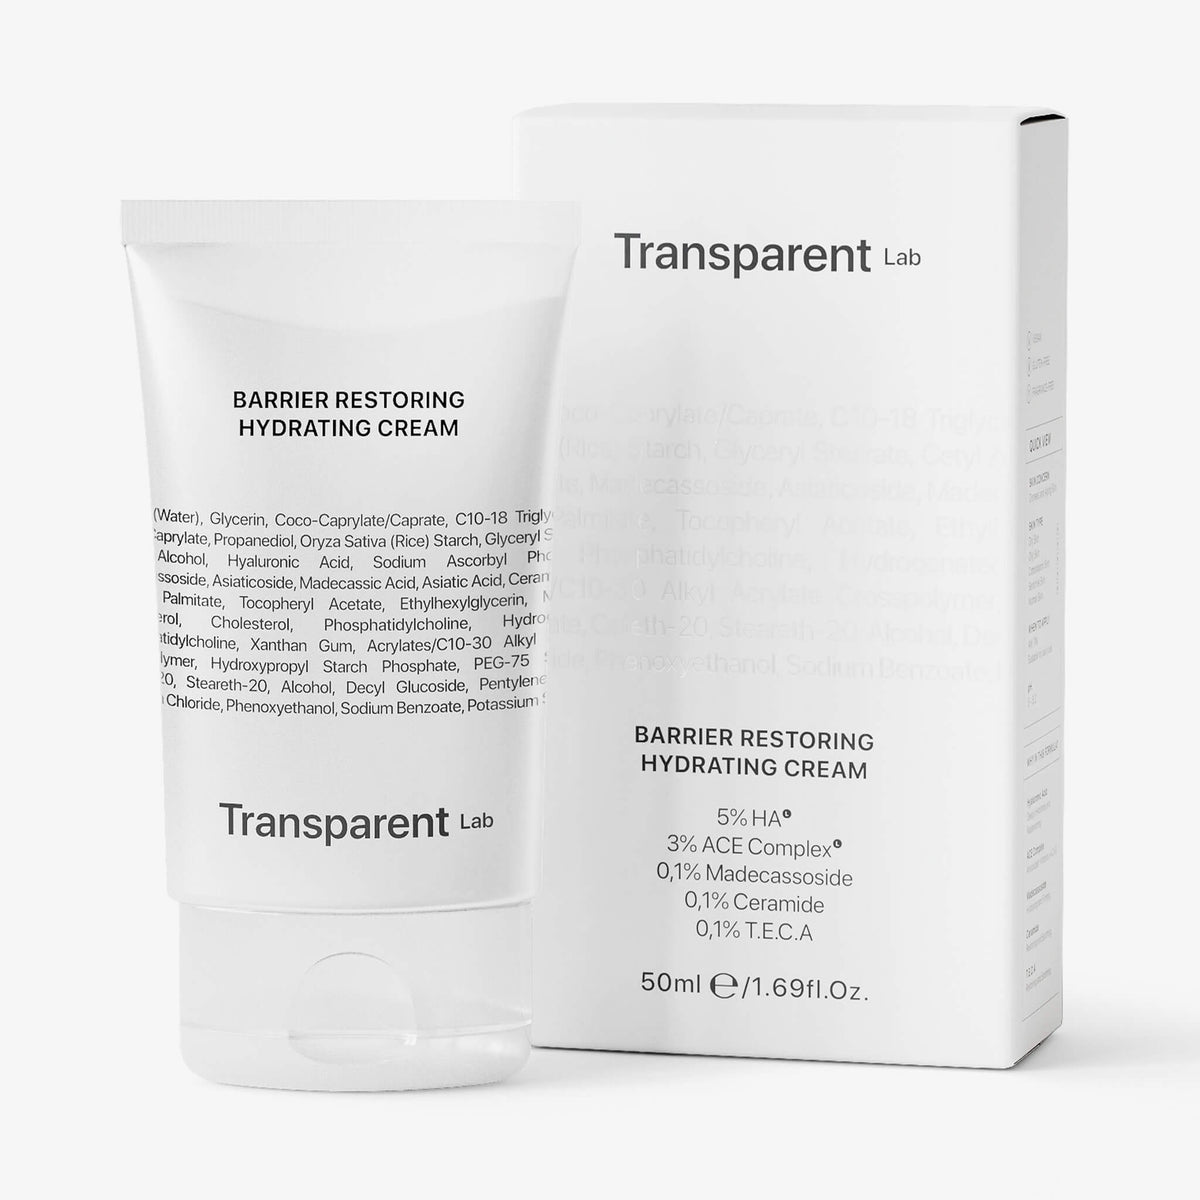 Transparent Lab Barrier Restoring Hydrating Cream und Verpackung vor weißem Hintergrund